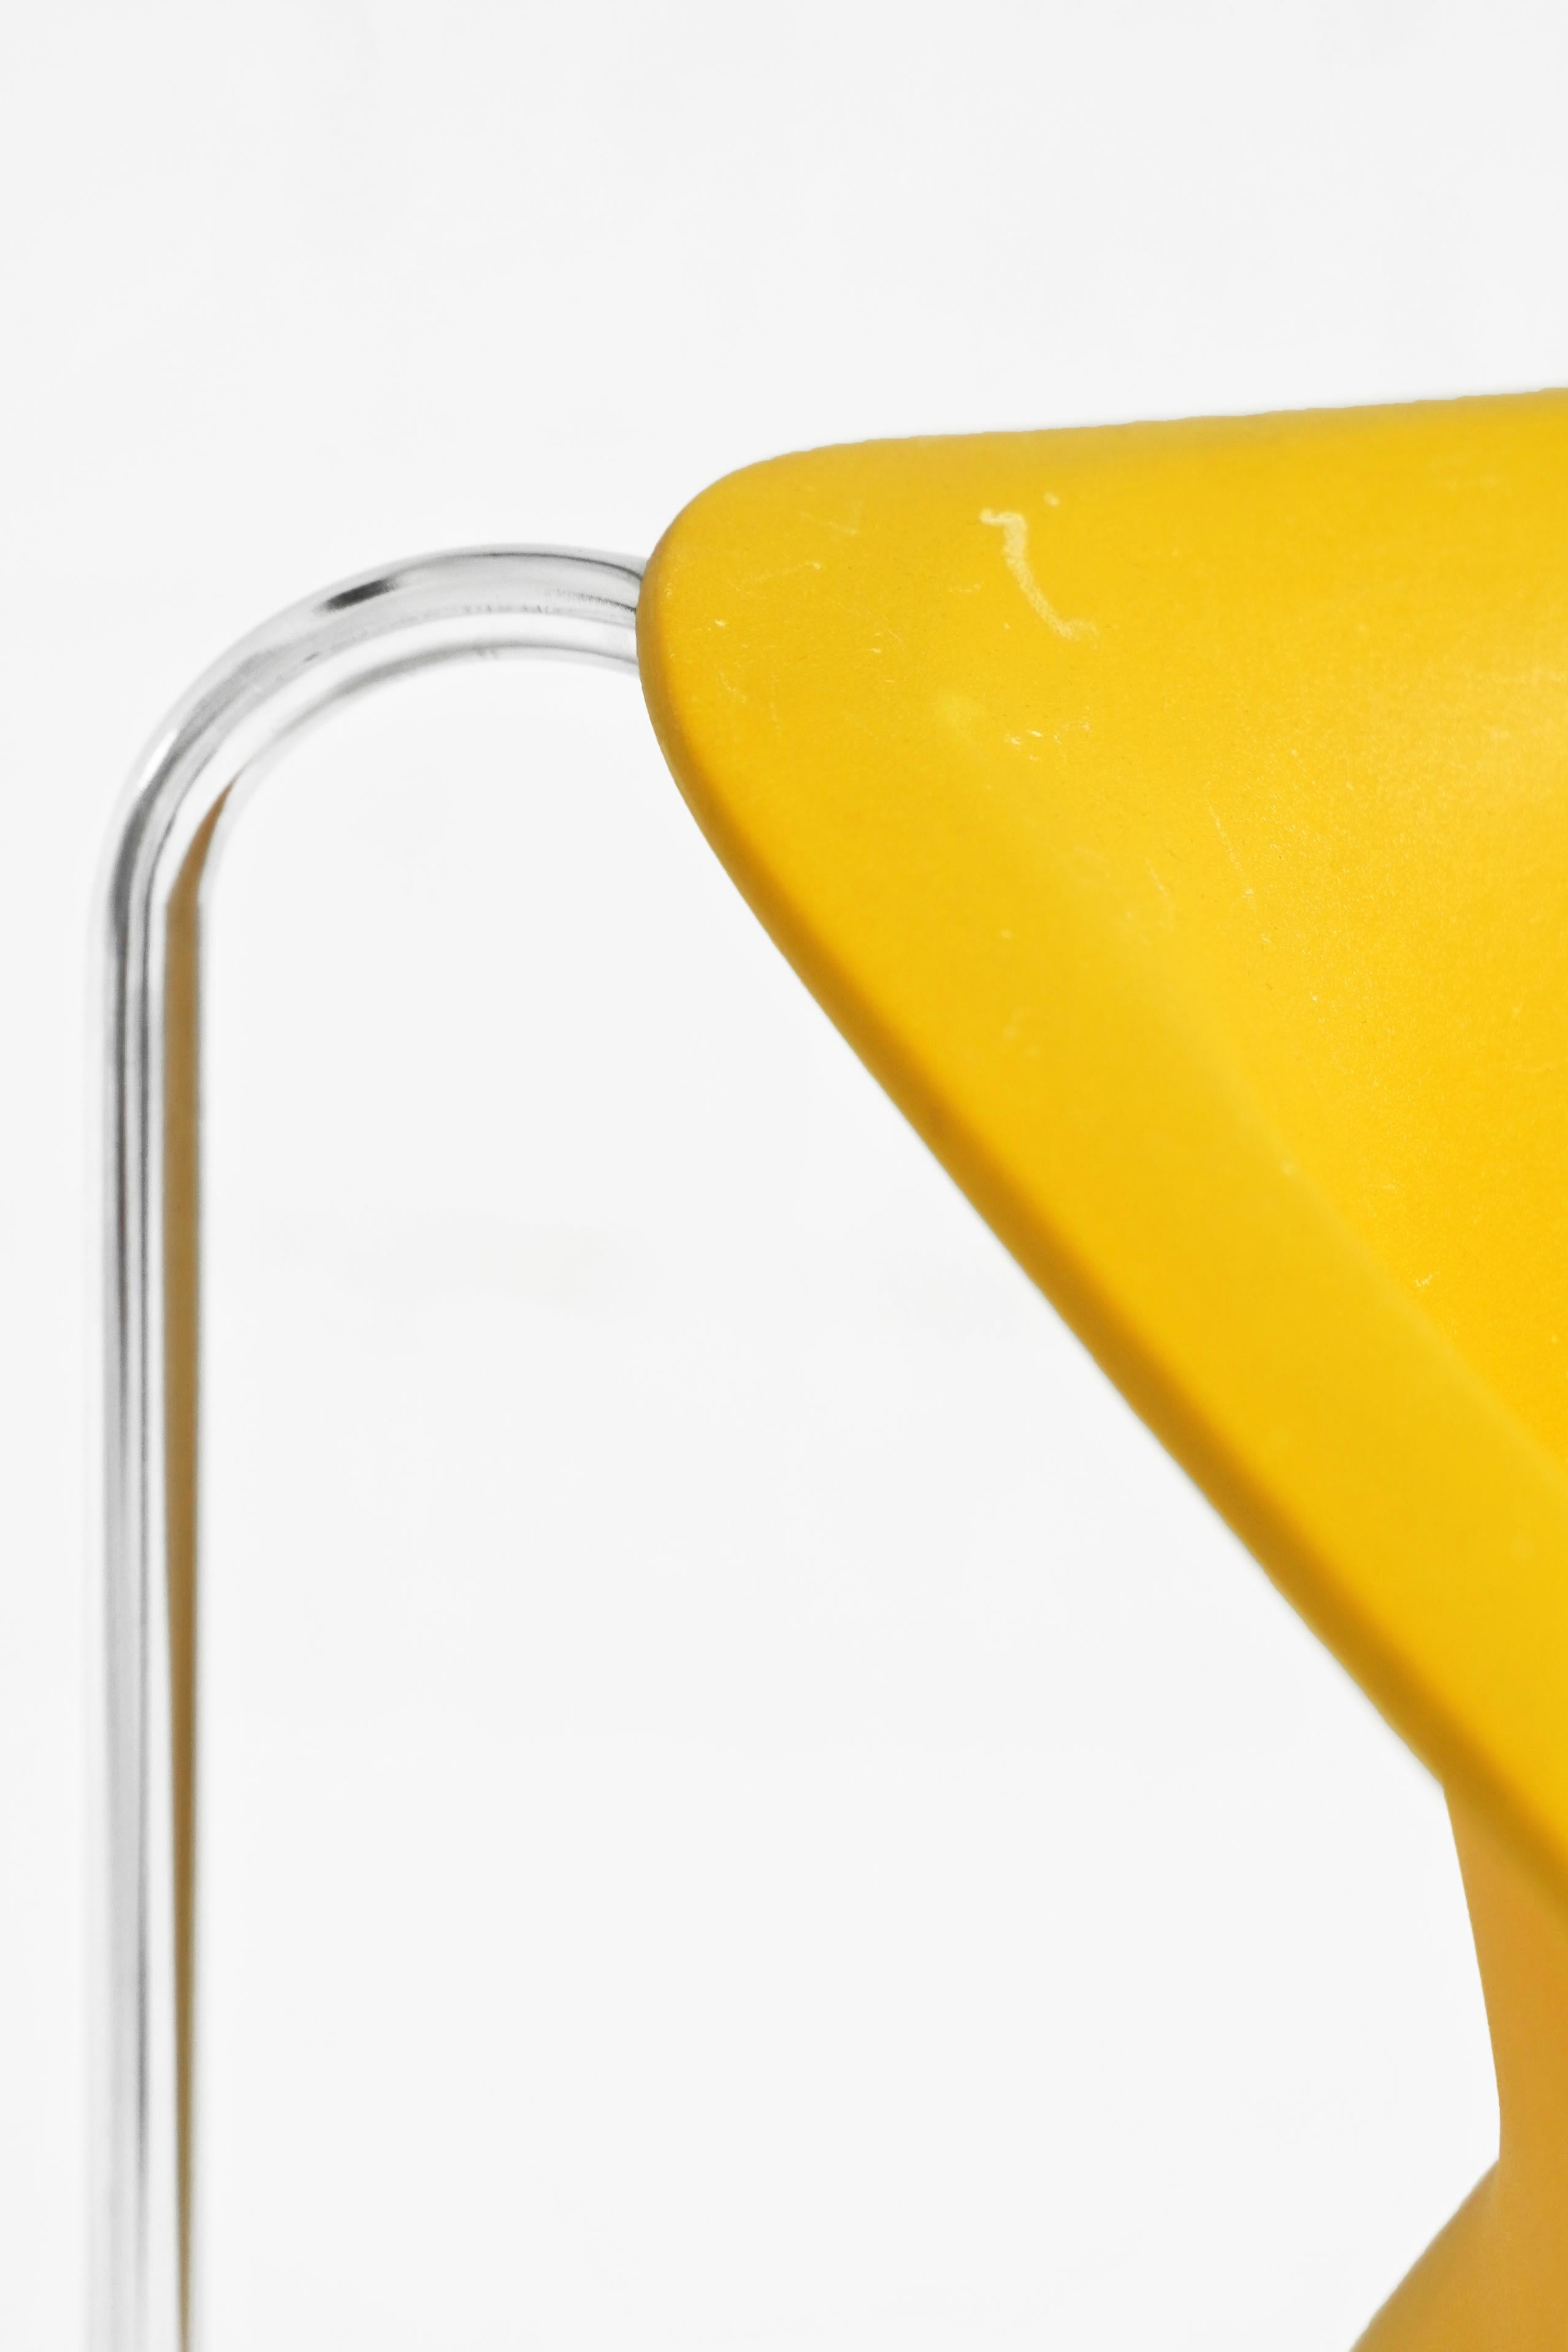 Chrome Chaise Lotus en jaune par Paul Boulva pour Artopex